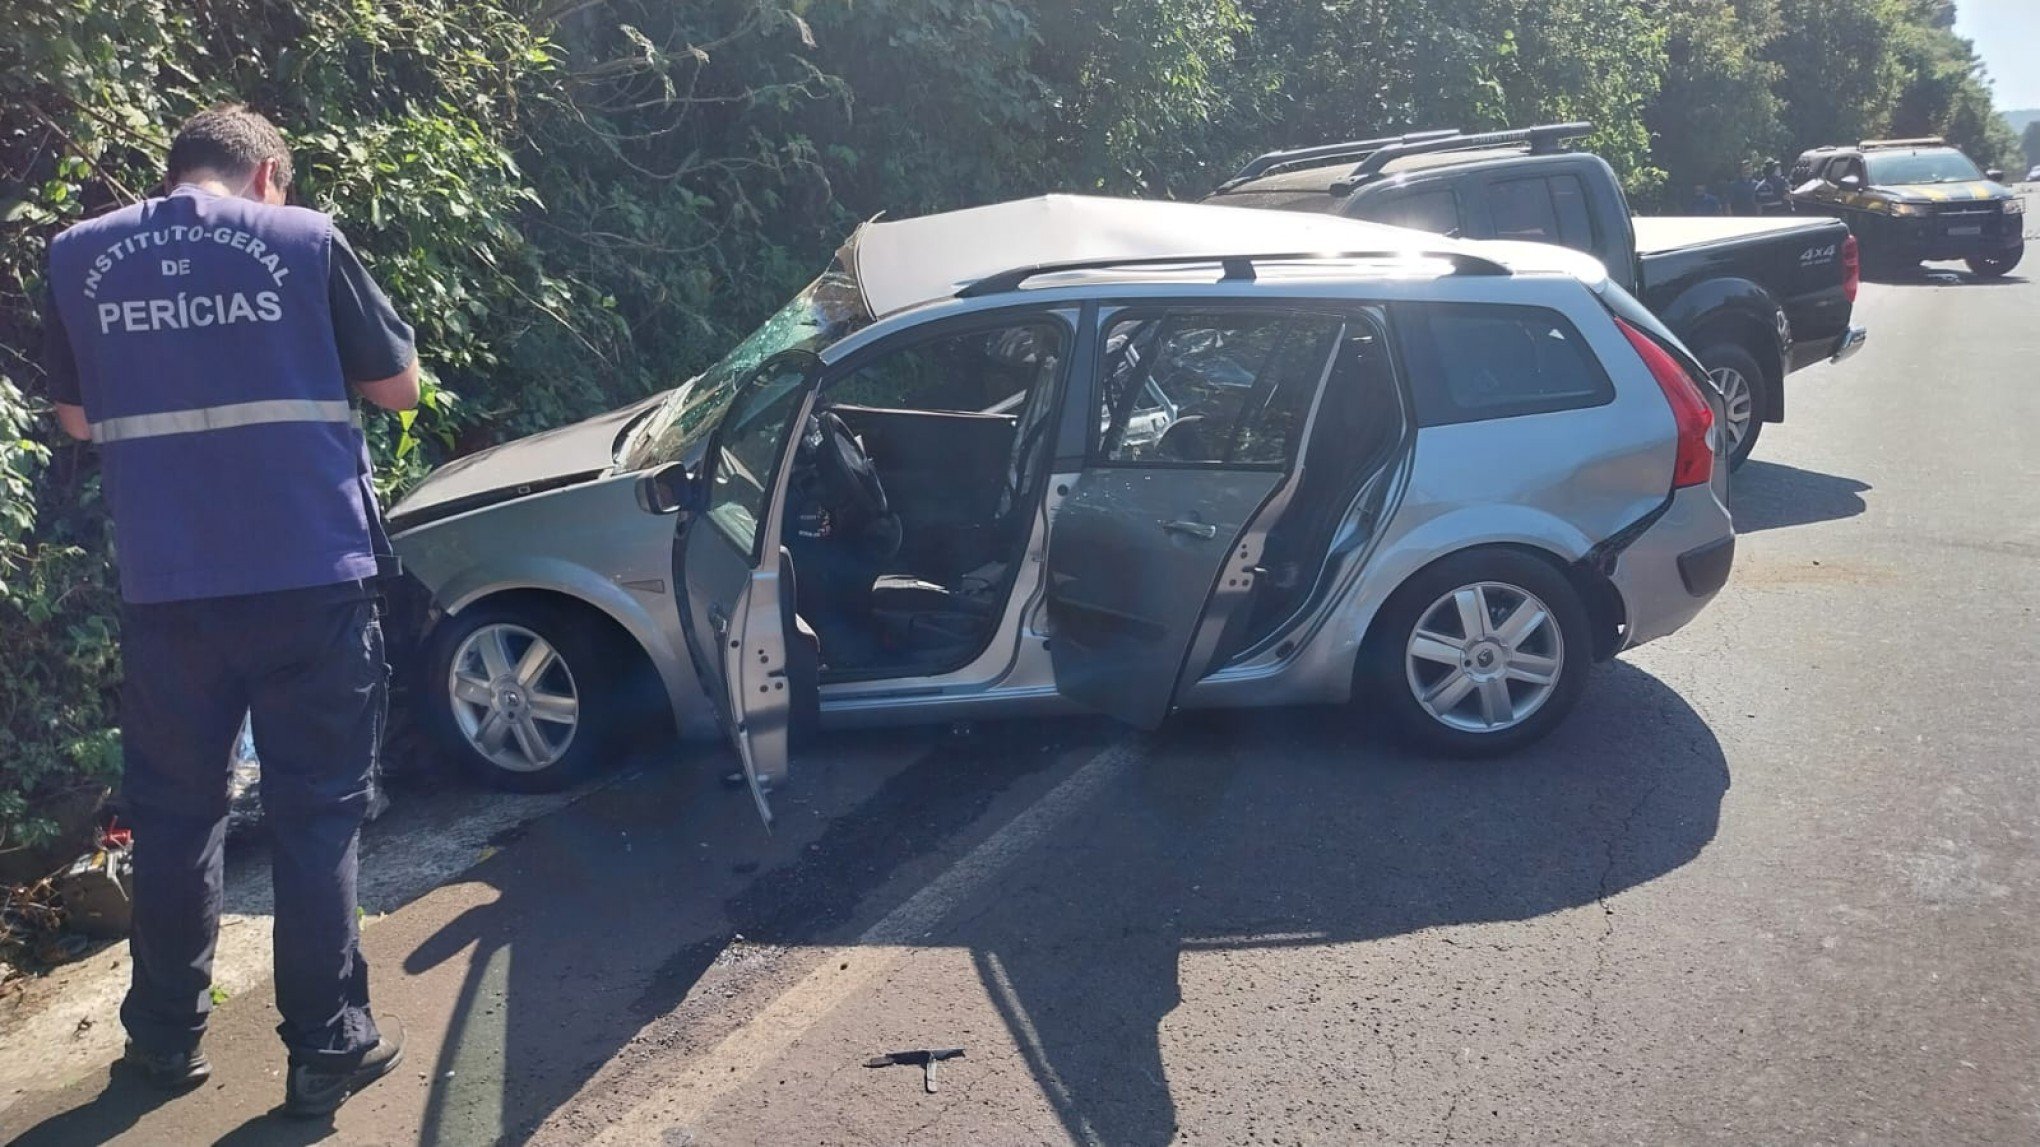 ACIDENTE DE TRÂNSITO: Condutor de veículo envolvido em acidente no trecho da morte segue hospitalizado em Novo Hamburgo